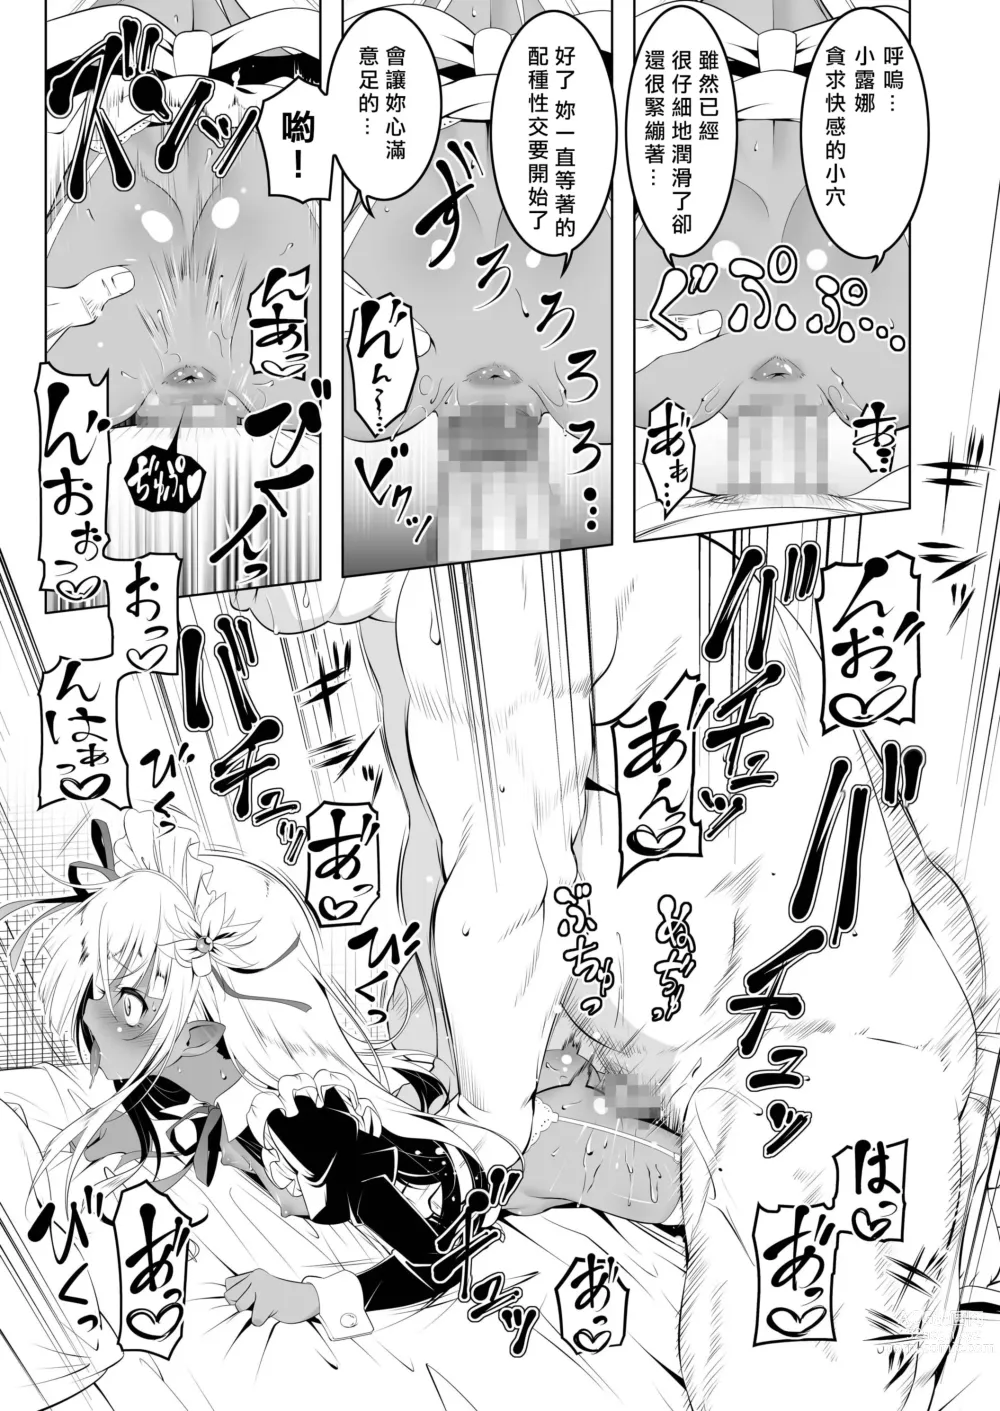 Page 18 of doujinshi Papakatsu Little Witch II